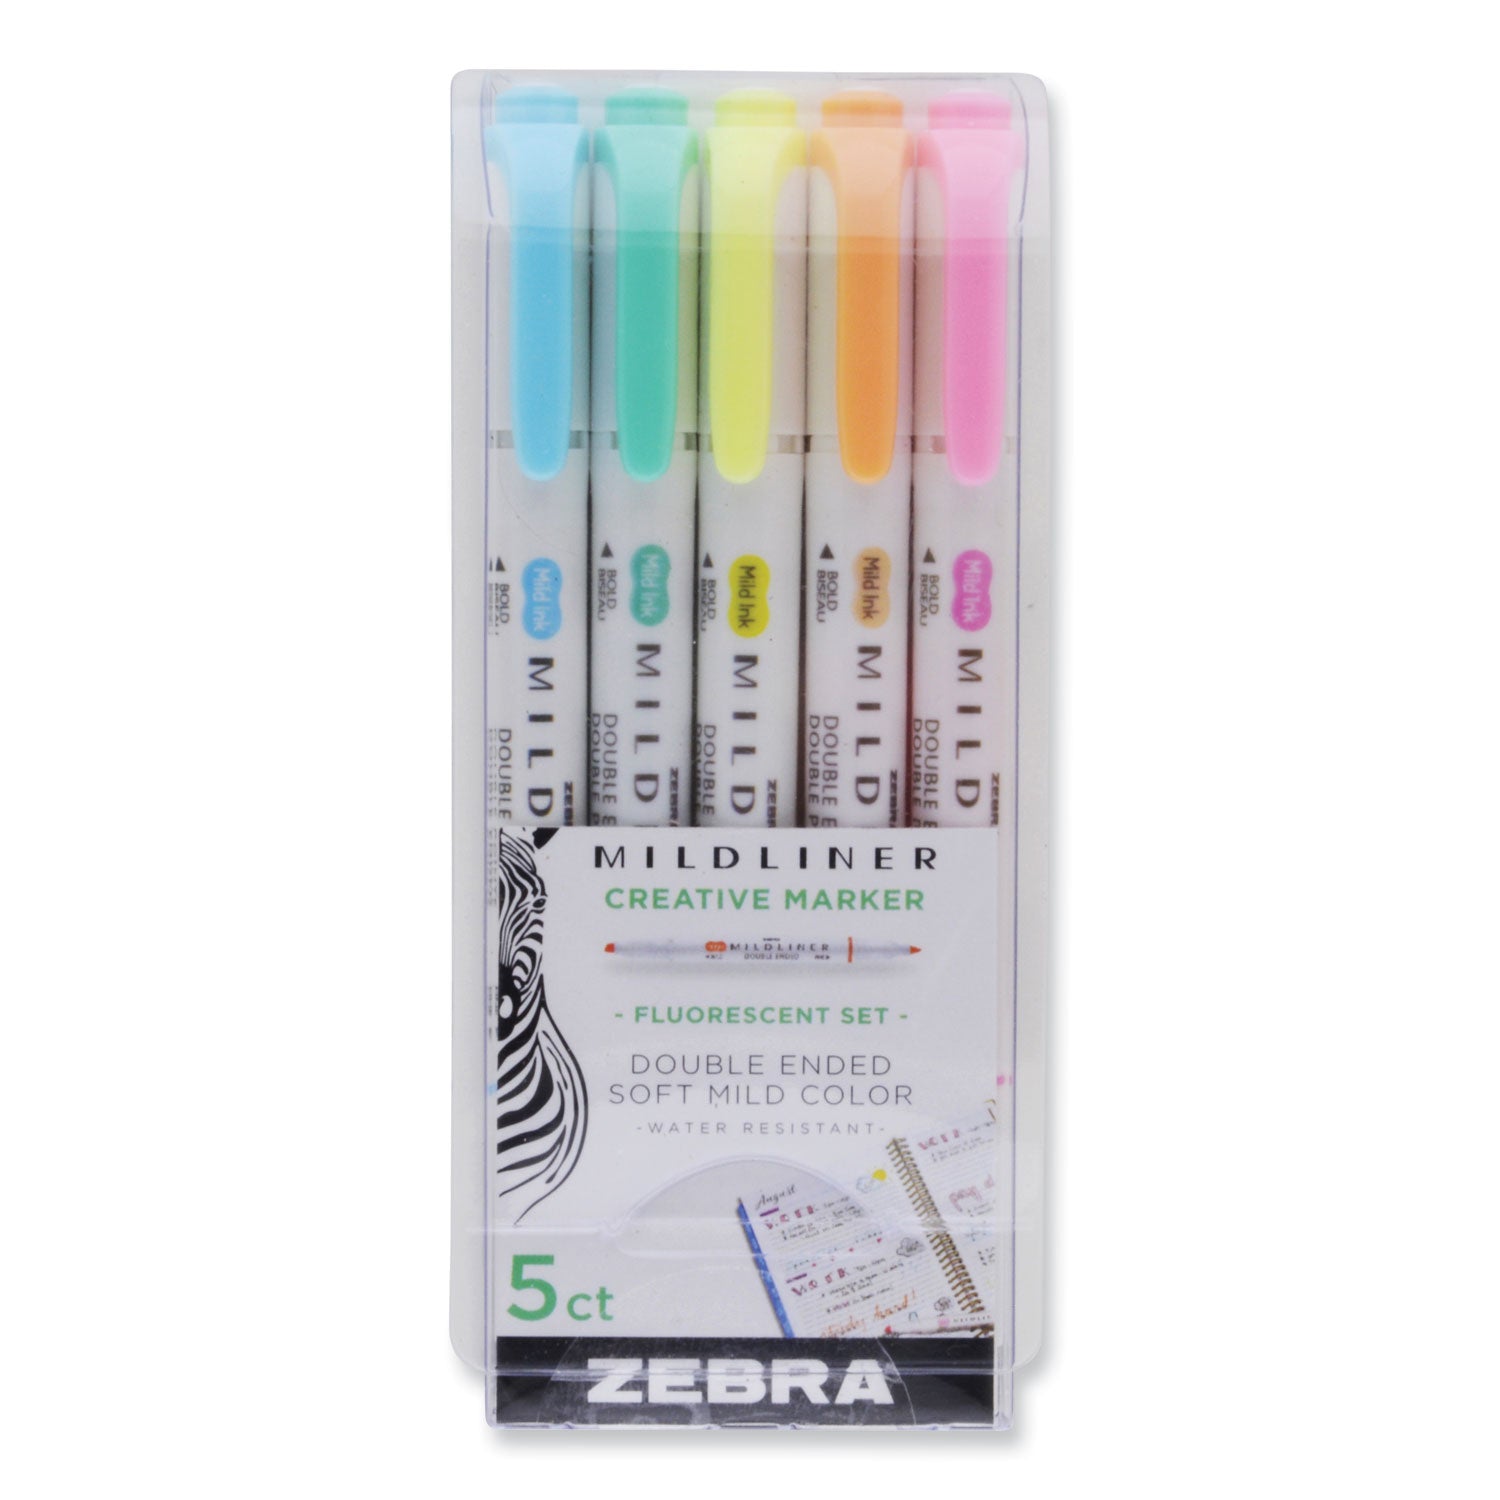 mildliner-double-ended-highlighter-assorted-ink-colors-bold-chisel-fine-bullet-tips-assorted-barrel-colors-5-pack_zeb78105 - 1